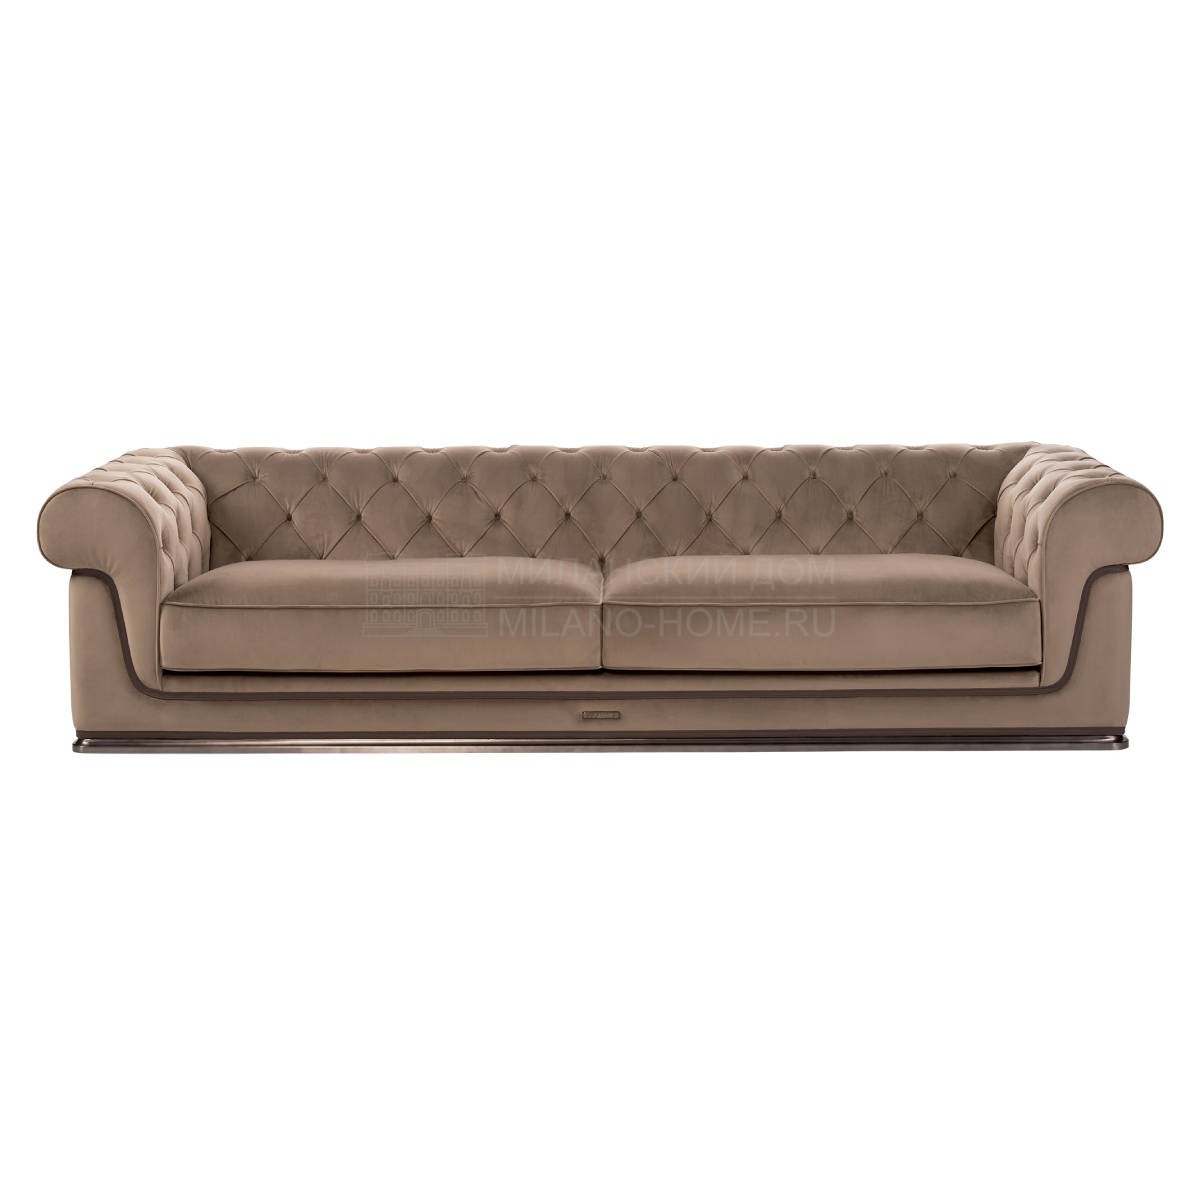 Прямой диван Chester Doney sofa из Италии фабрики IPE CAVALLI VISIONNAIRE